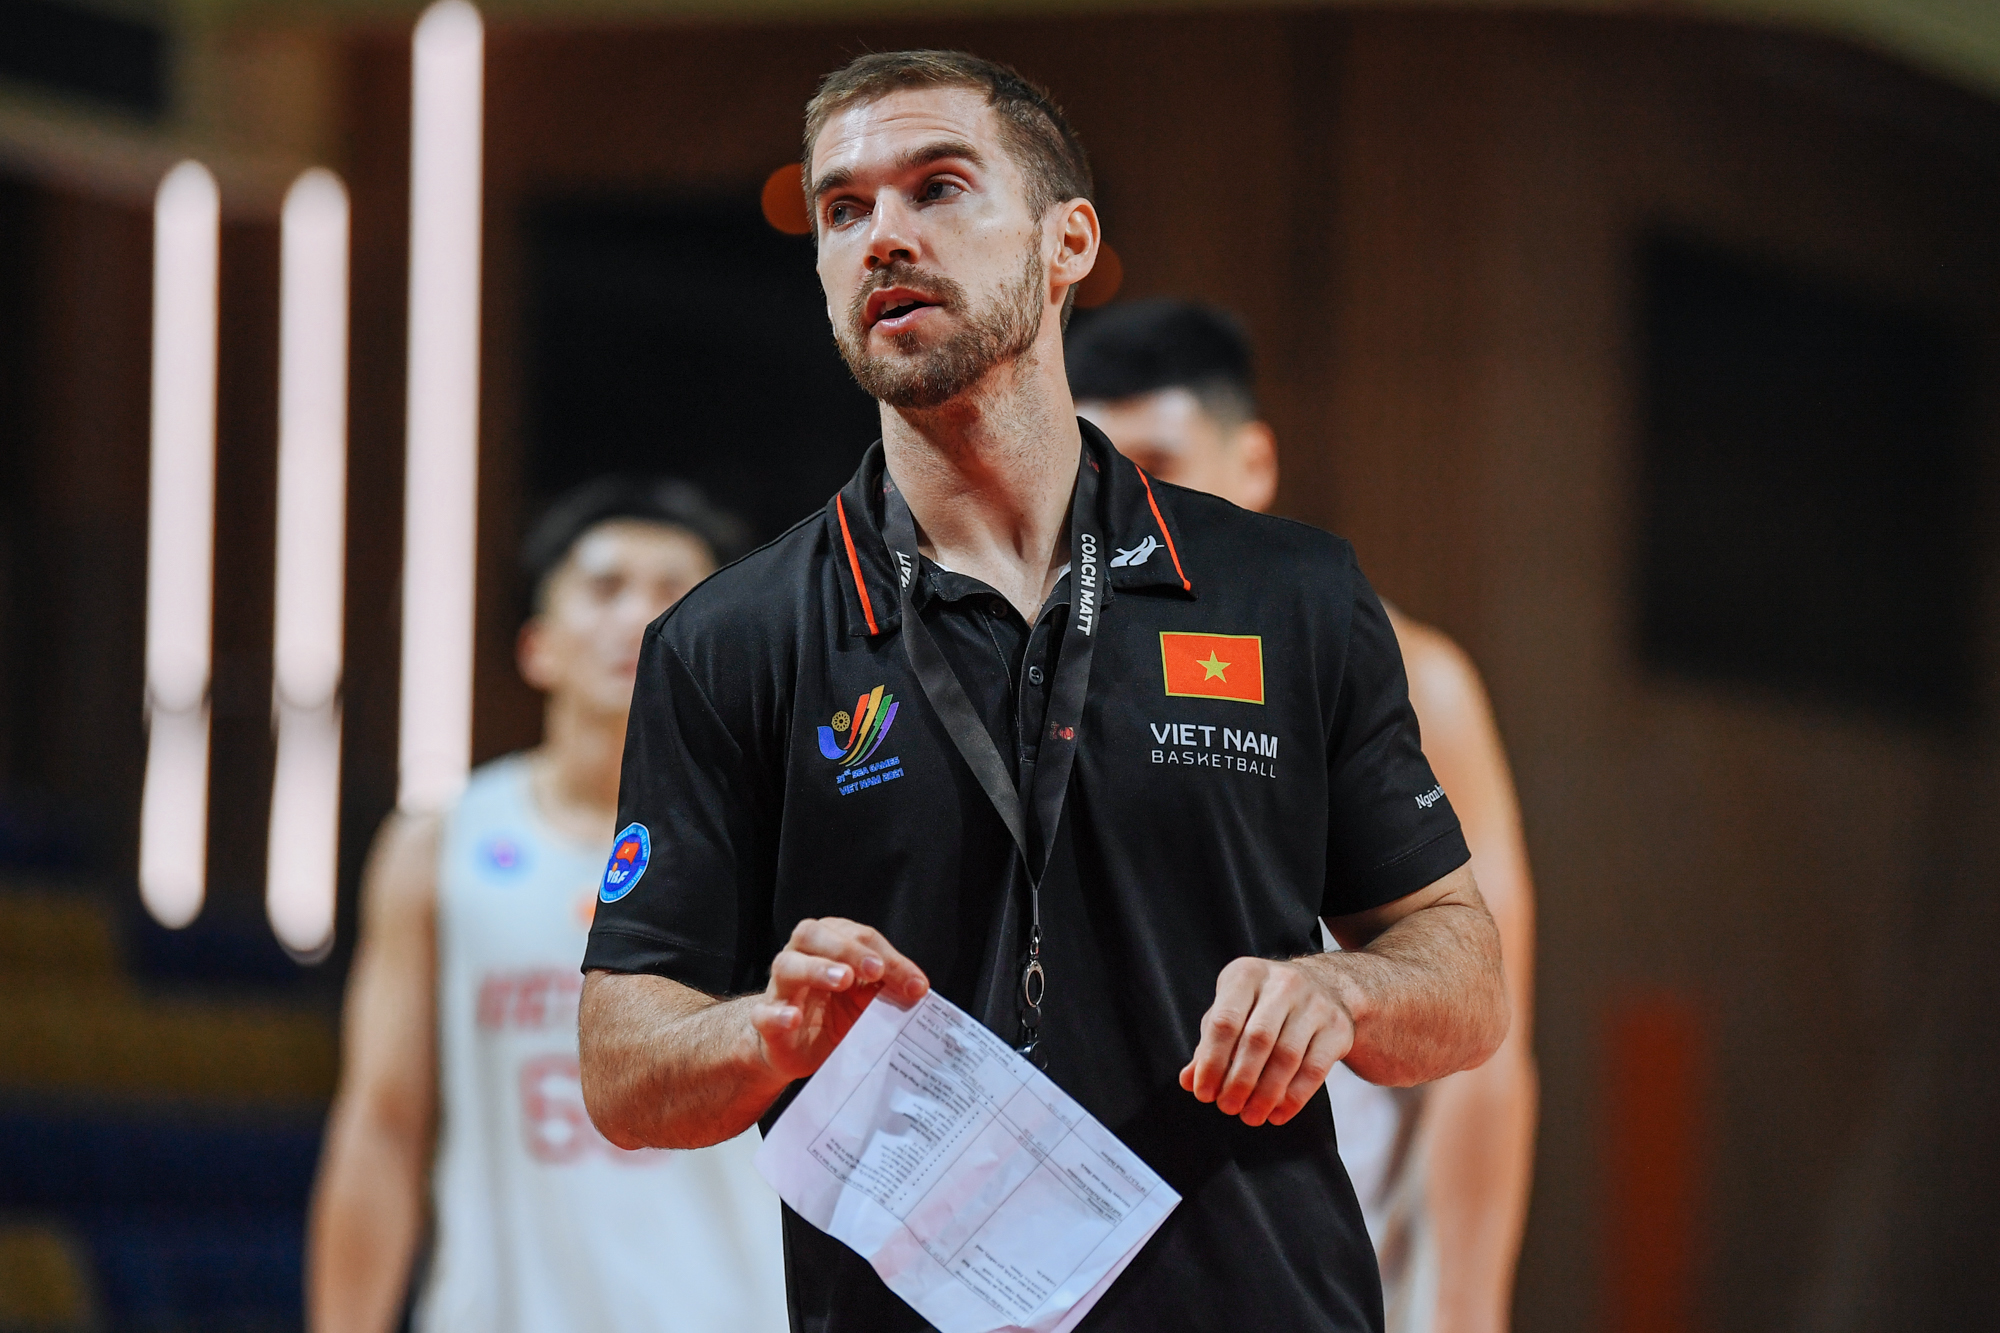 HLV Matt Van Pelt chỉ ra điểm yếu của bóng rổ Việt Nam - Ảnh 3.